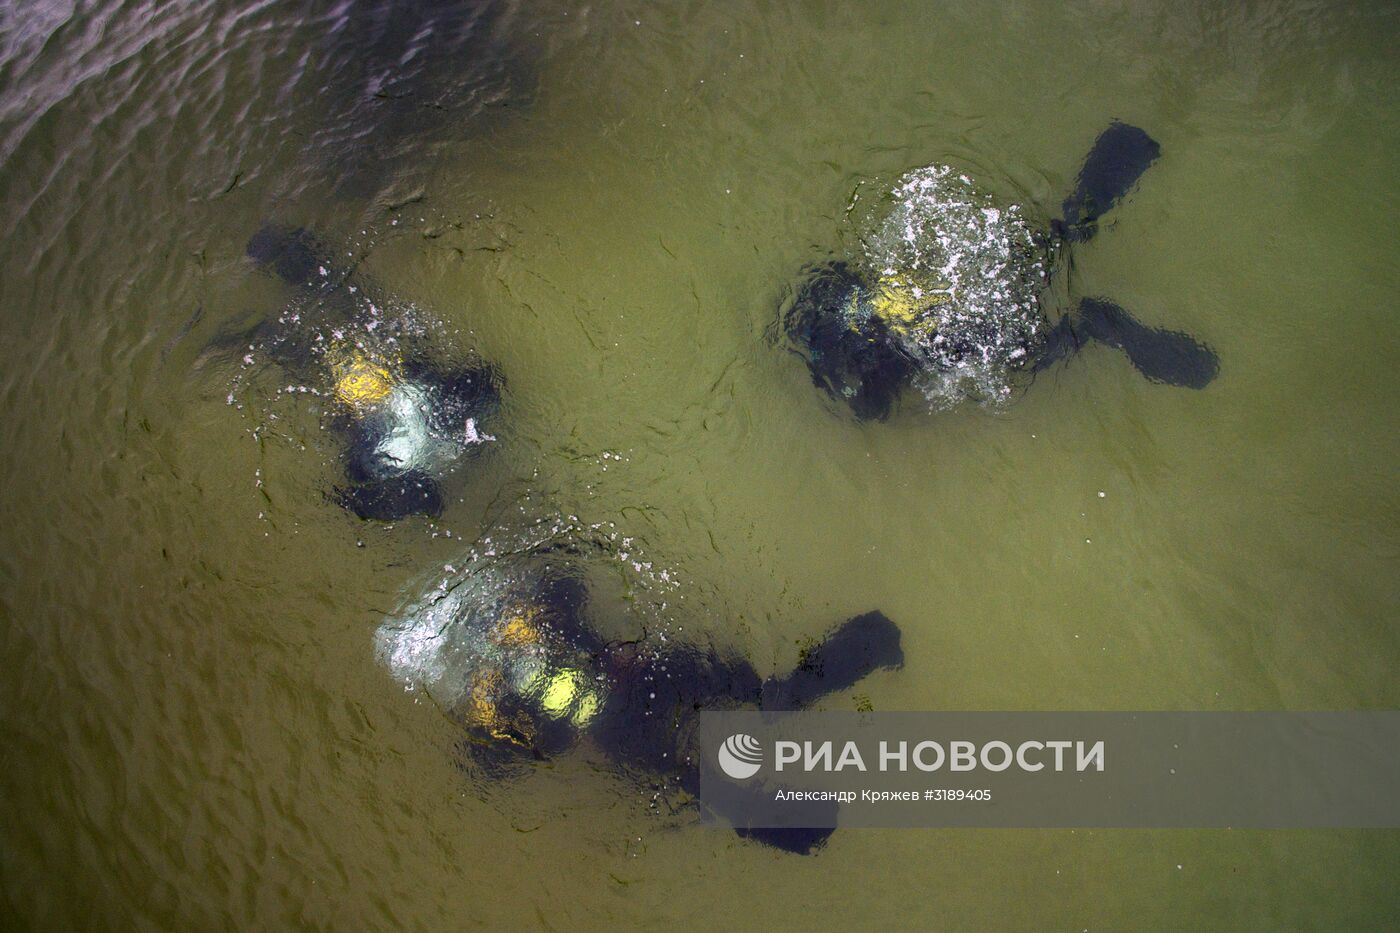 Акция по уборке берега и акватории озера Байкал от мусора